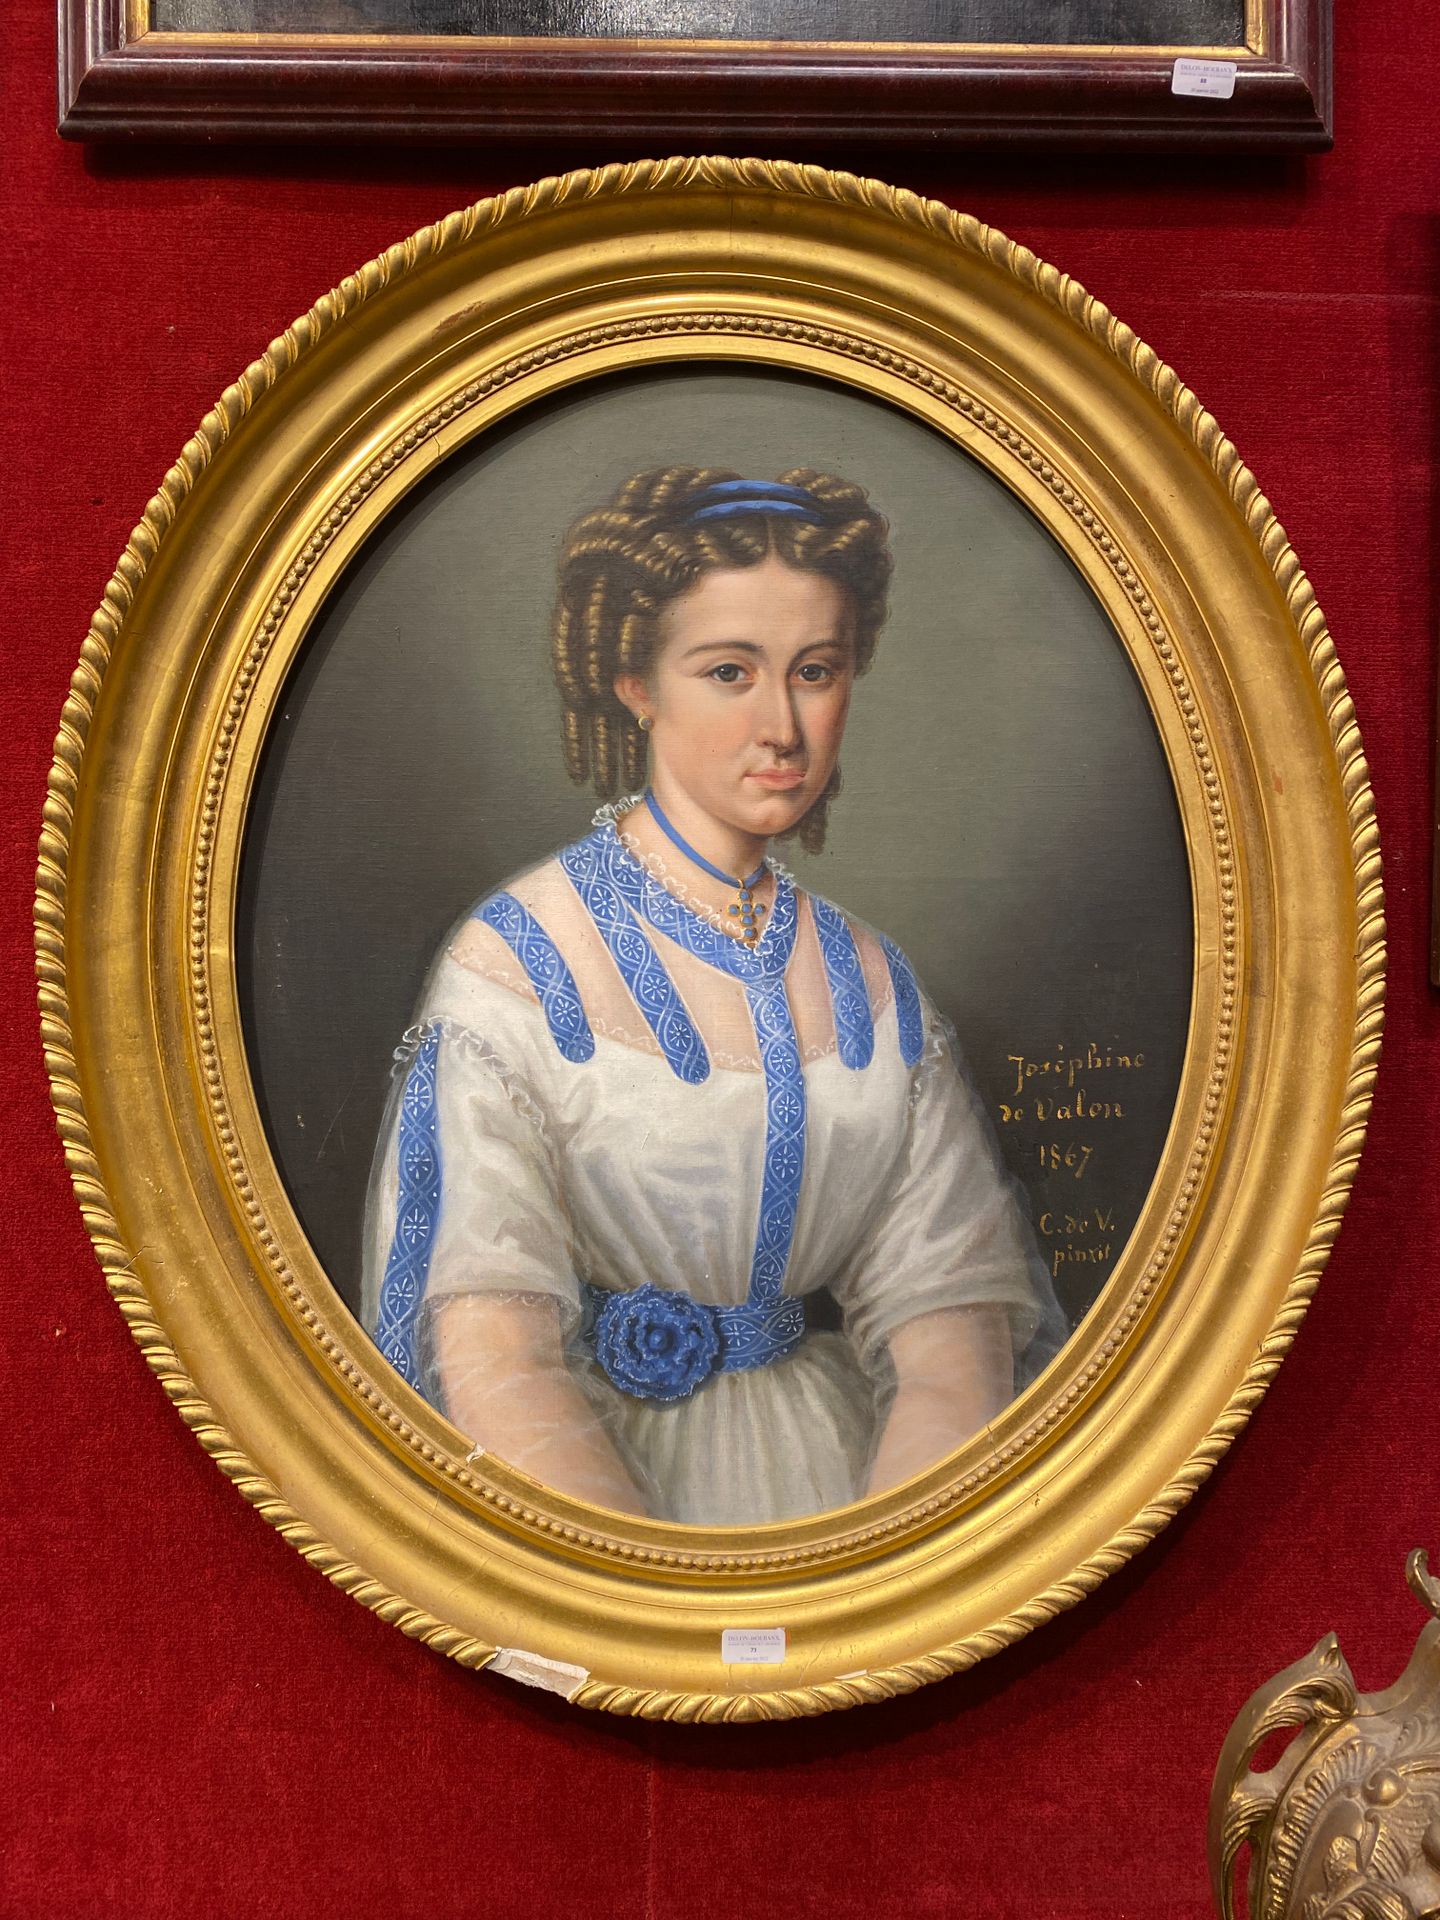 Null SCUOLA FRANCESE 1867

Ritratto di Joséphine de Valon

Tela ovale, sulla sua&hellip;